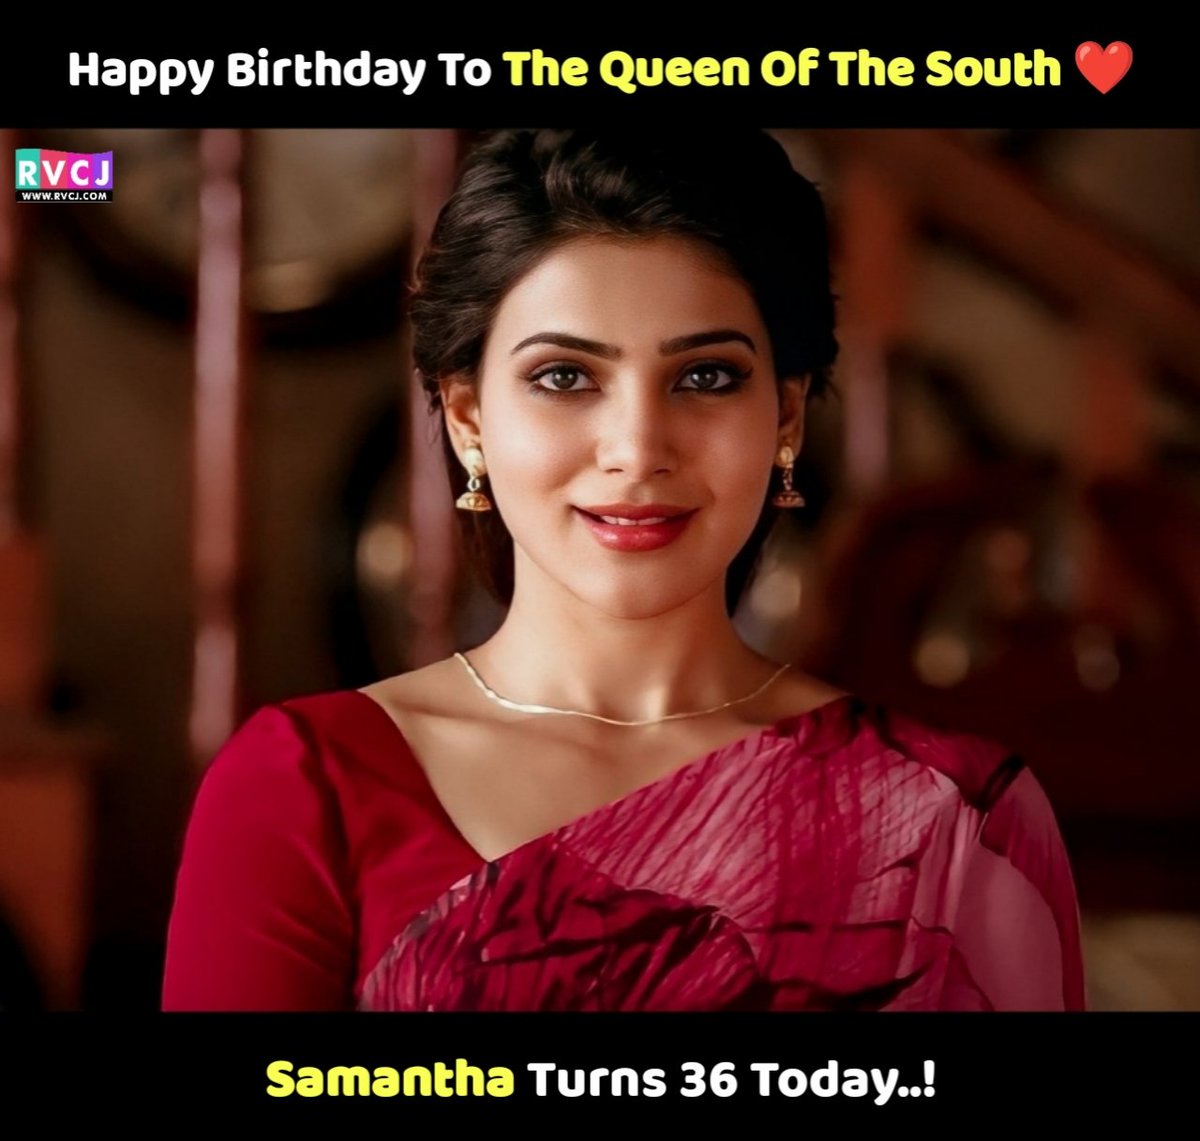 Happy Birthday Sam ❤️
.
#HappyBirthdaySamantha 
.
#Samantha #SamanthaRuthPrabhu #HBDSamantha #RvcjTelugu